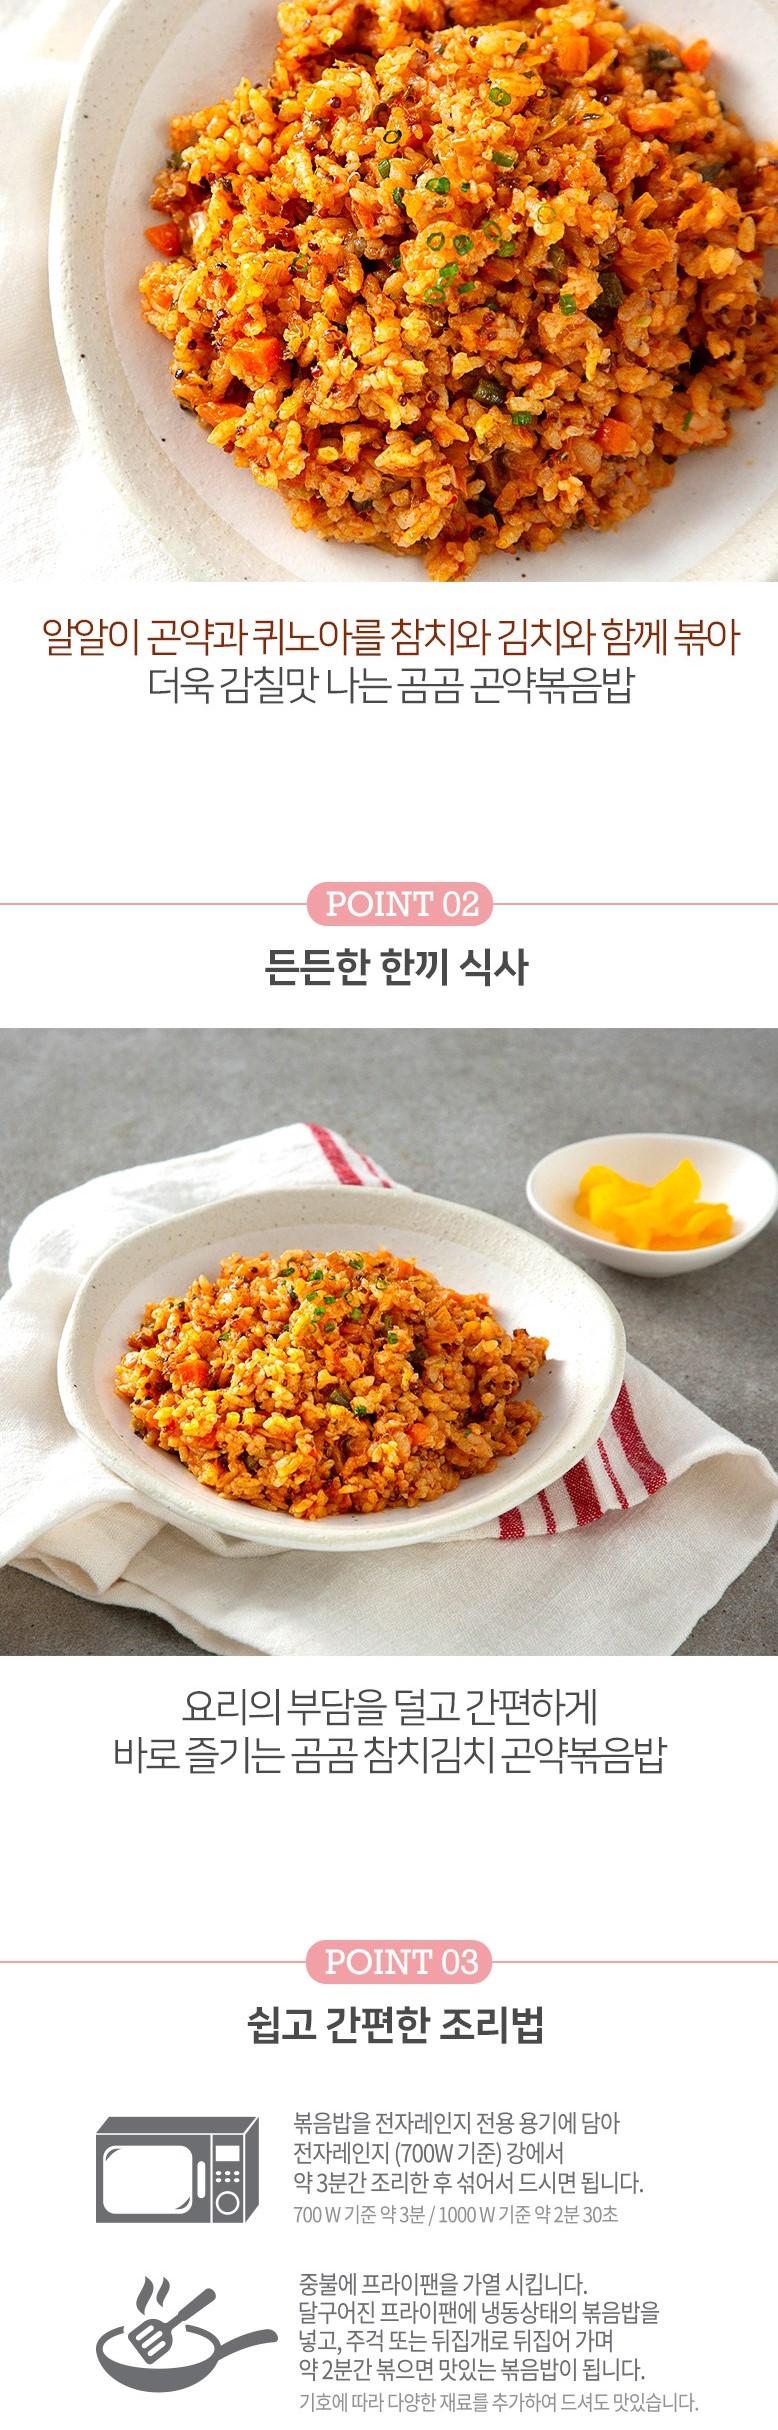 韓國食品-[Gomgom] Mixed 營養雜穀蒟蒻炒飯 (吞拿魚泡菜) 200g